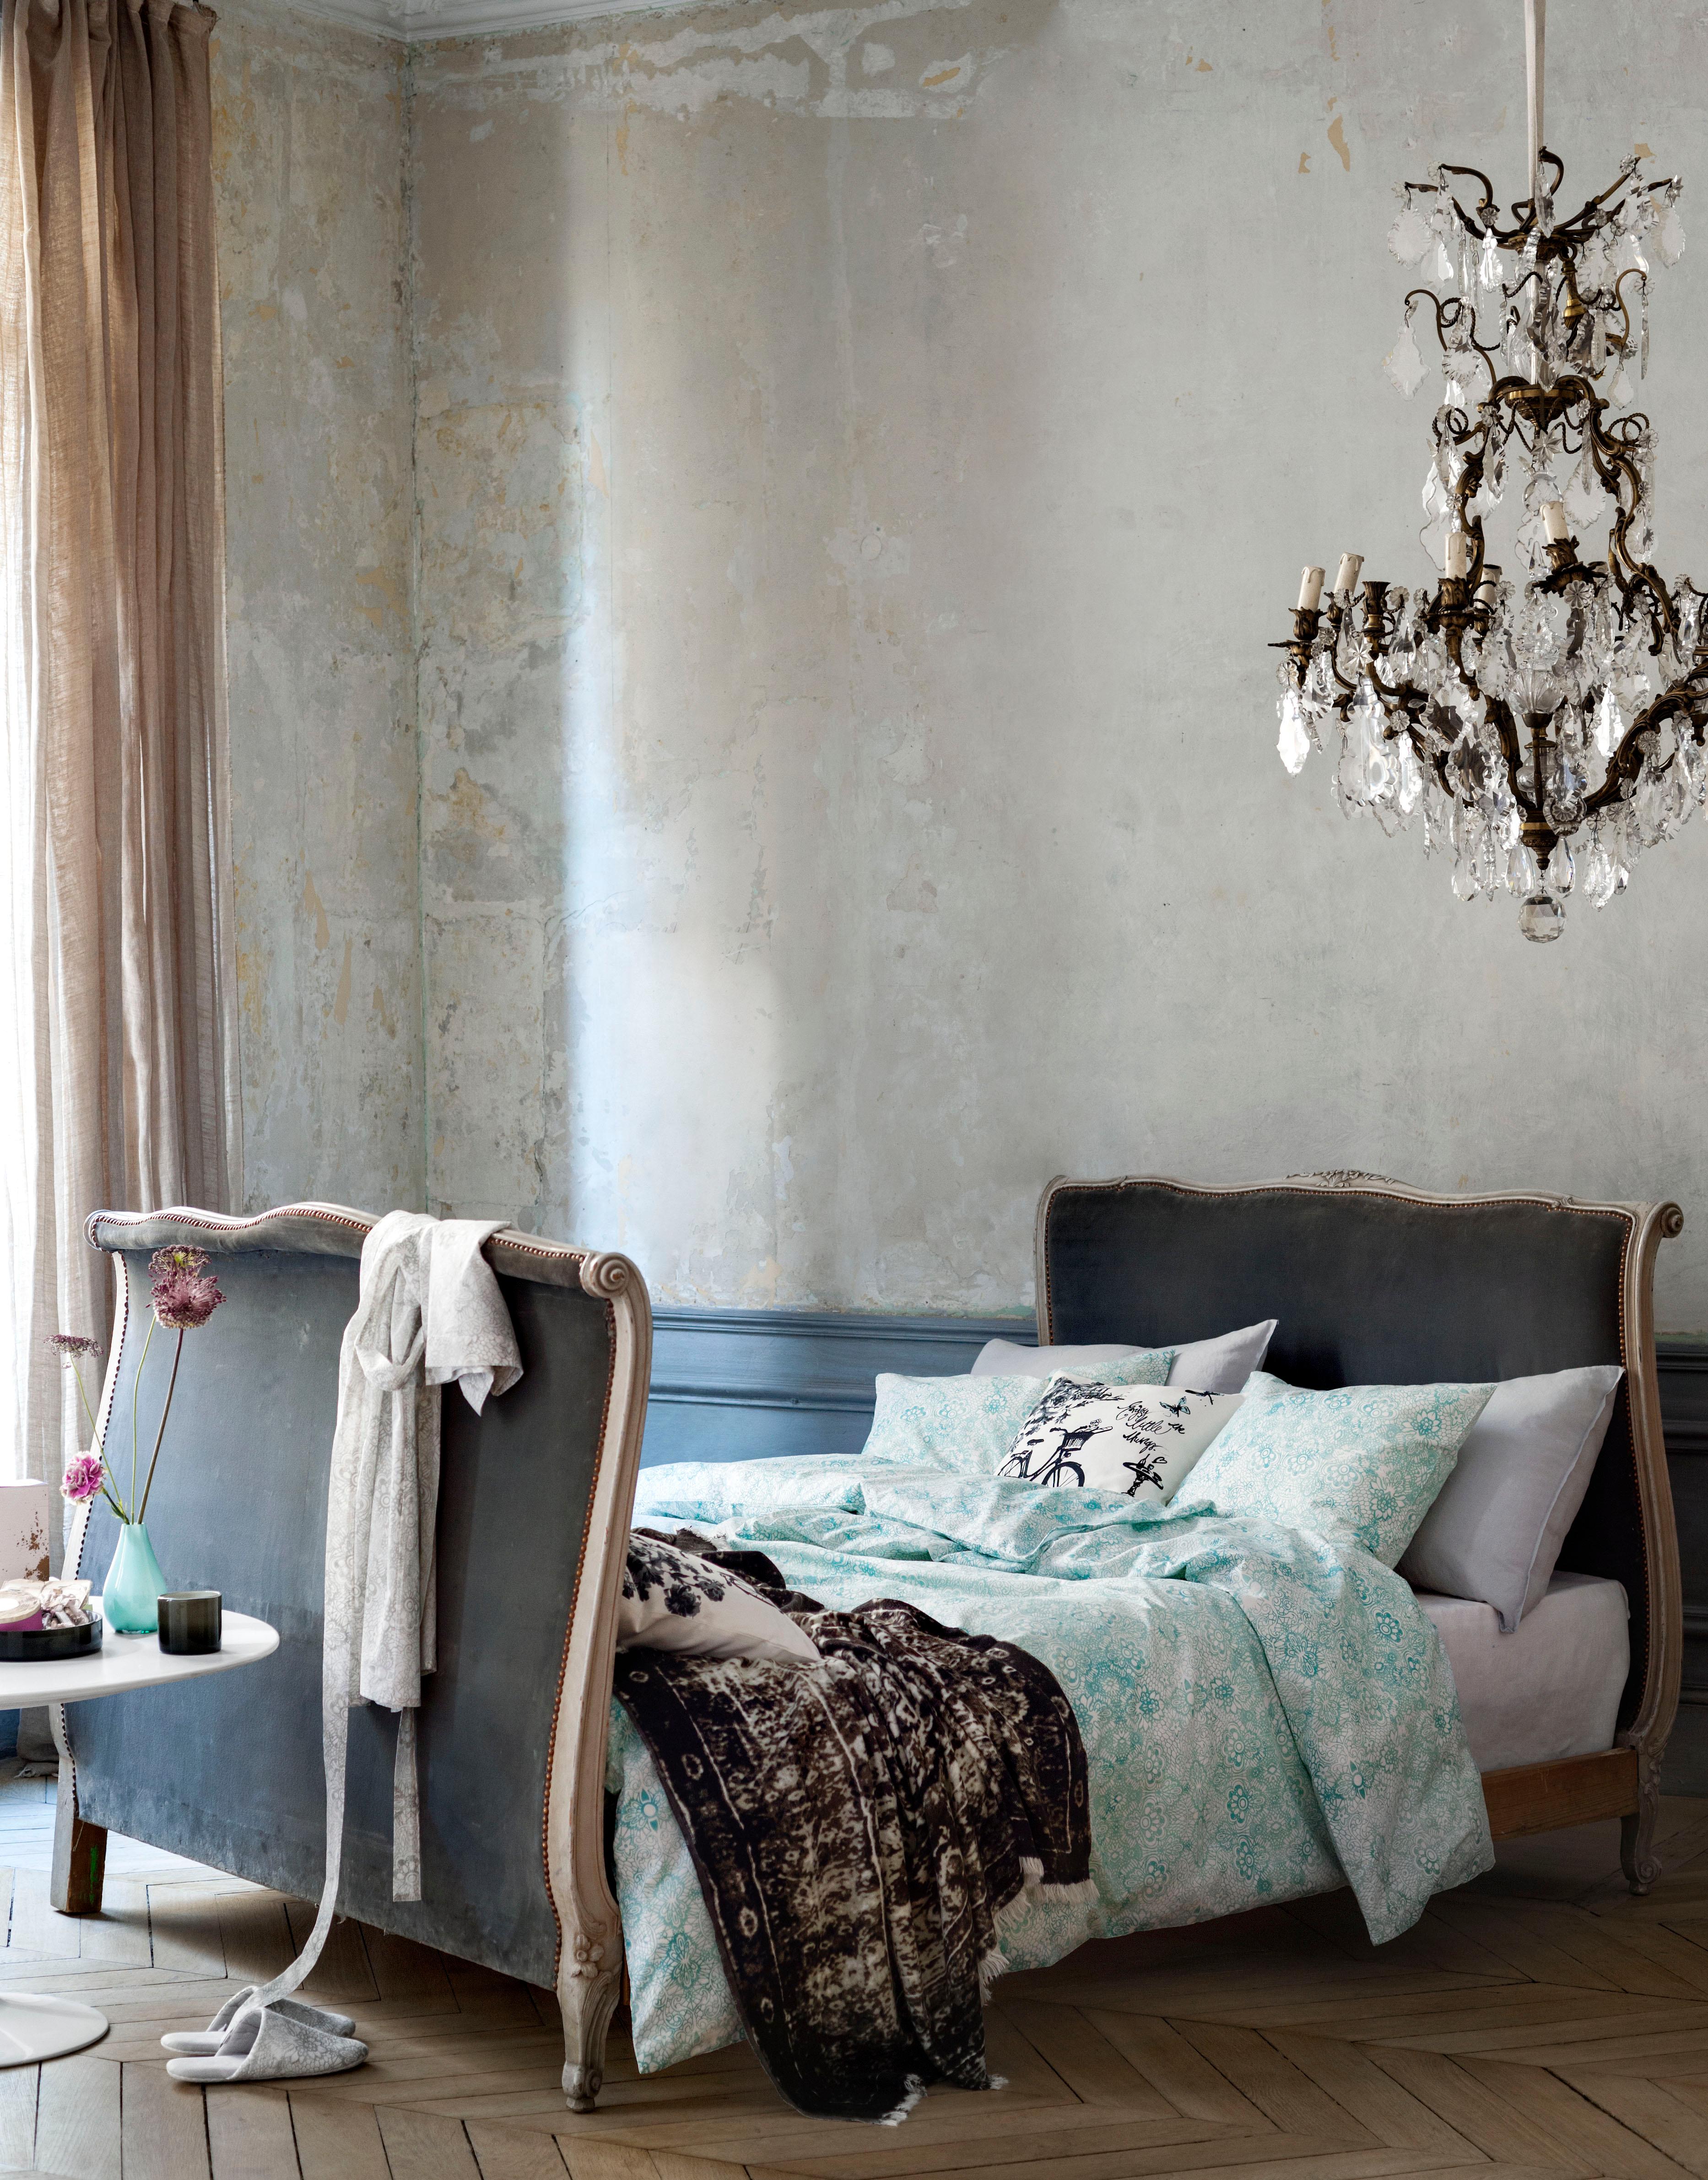 Ausgefallener Kronleuchter im romantischen Schlafzimmer #bett #eklektisch #kronleuchter #bettwäsche #barockmöbel #schlafzimmerbeleuchtung ©H&M Home